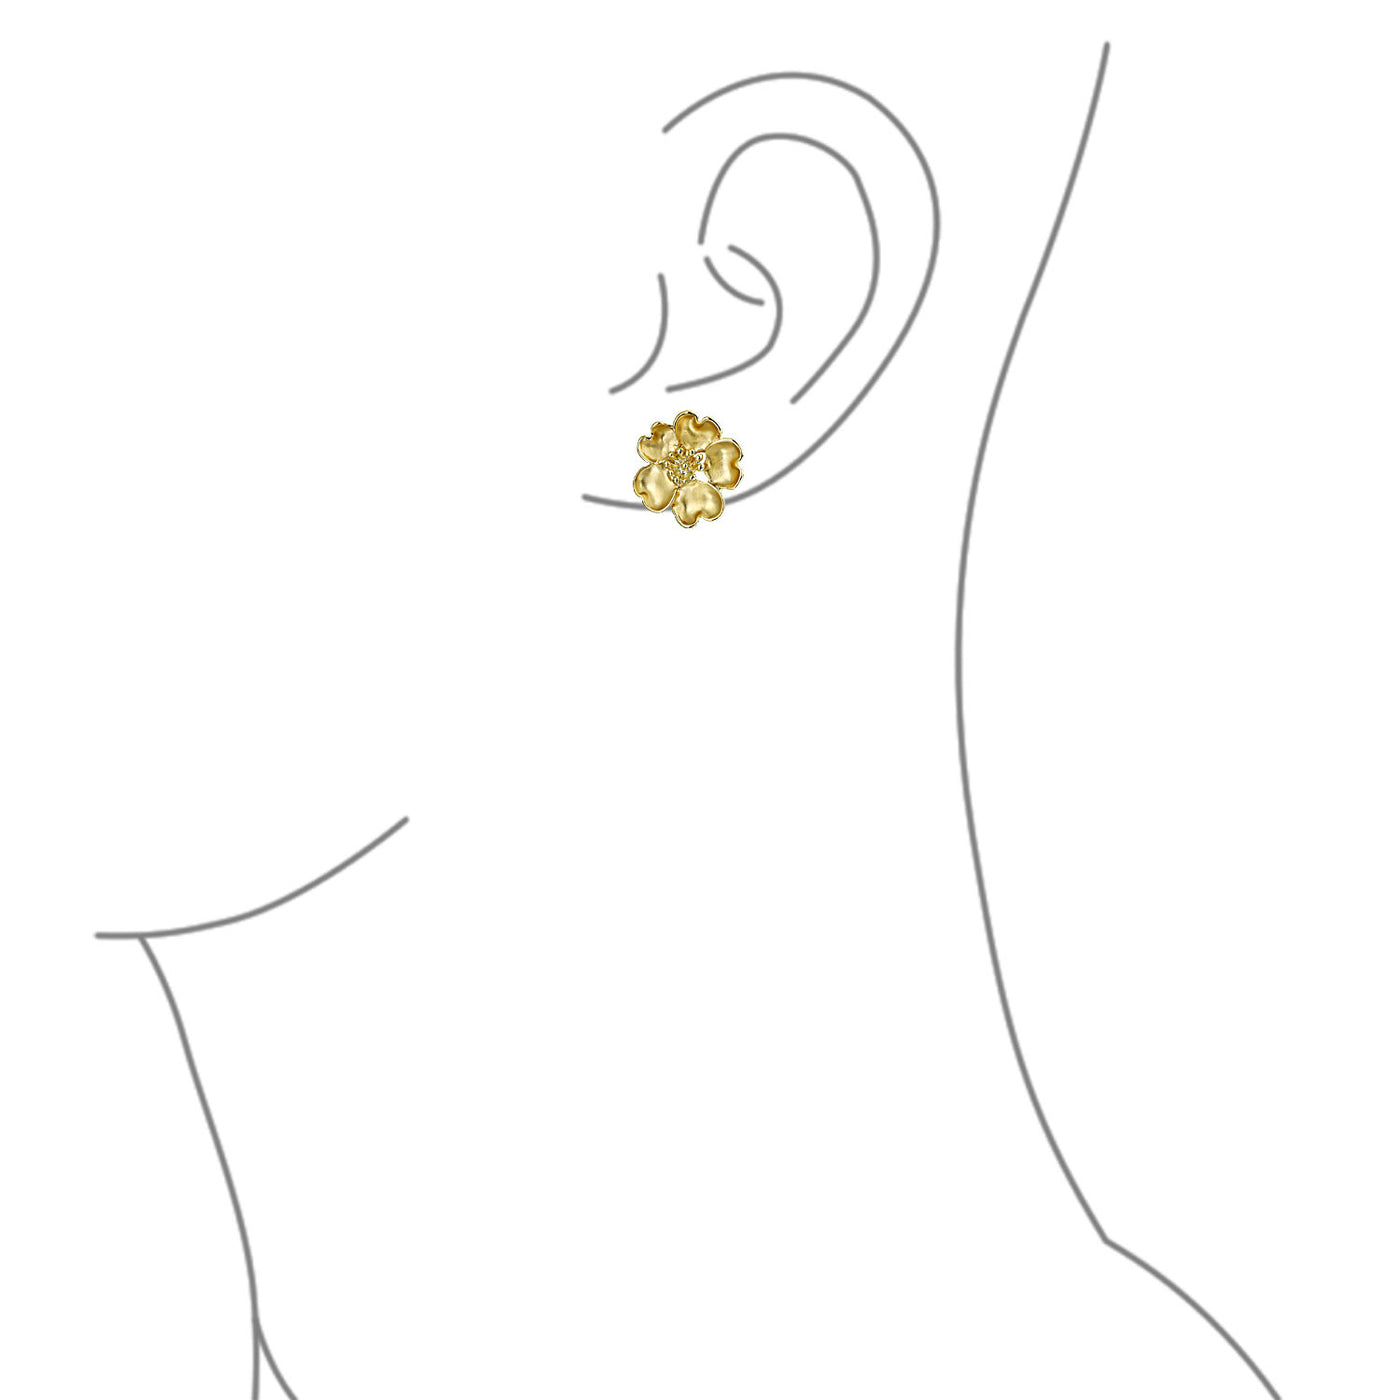 Heart Petals Flower CZ Clip On Earring Ears Matte Gold Plated Brass